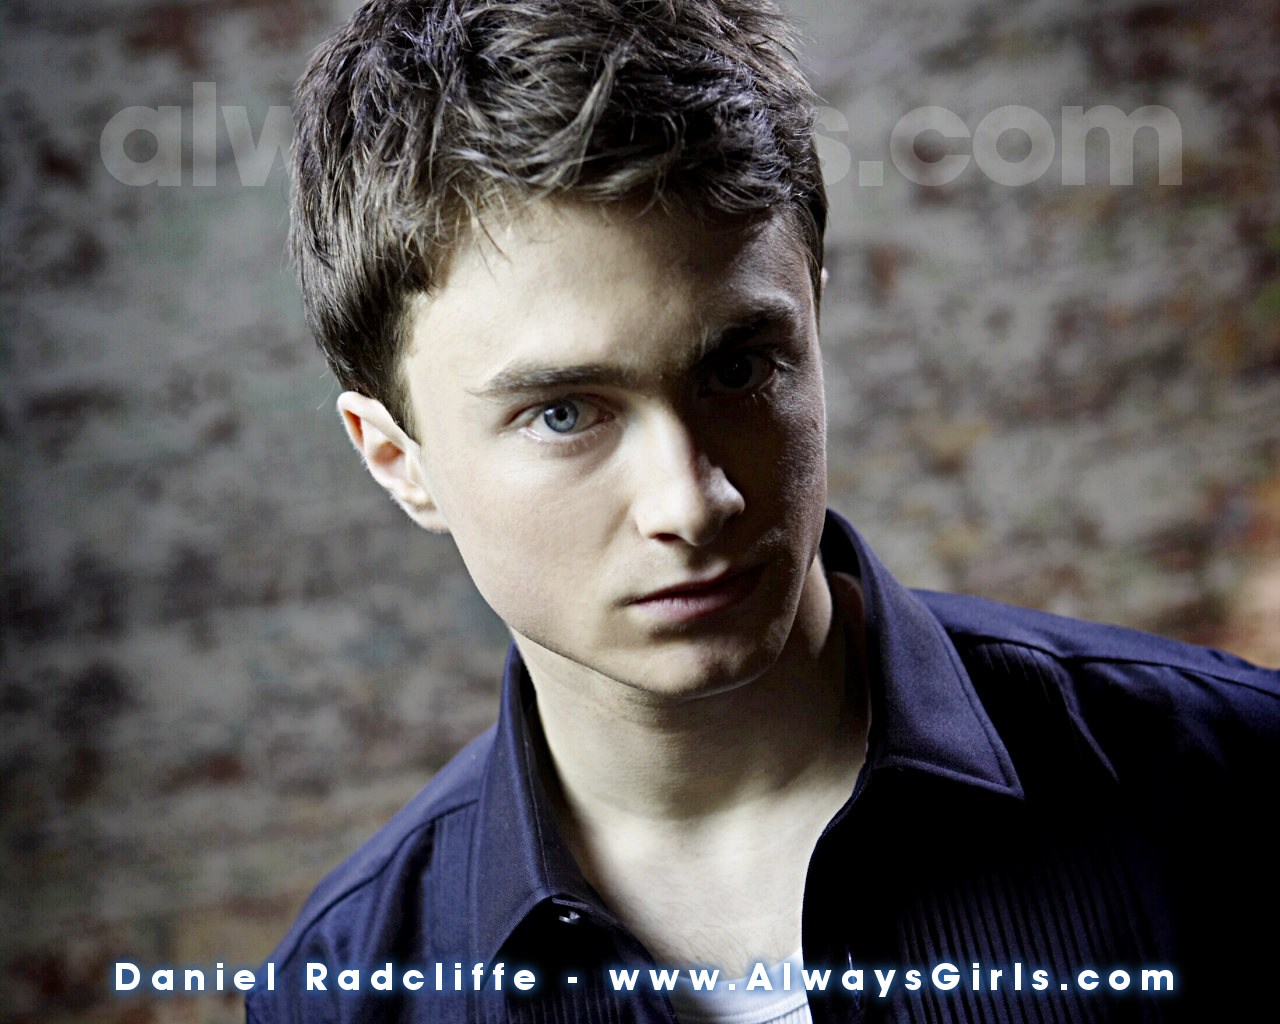 Daniel Radcliffe - Daniel Radcliffe Wallpaper 24258894 - Fanpop